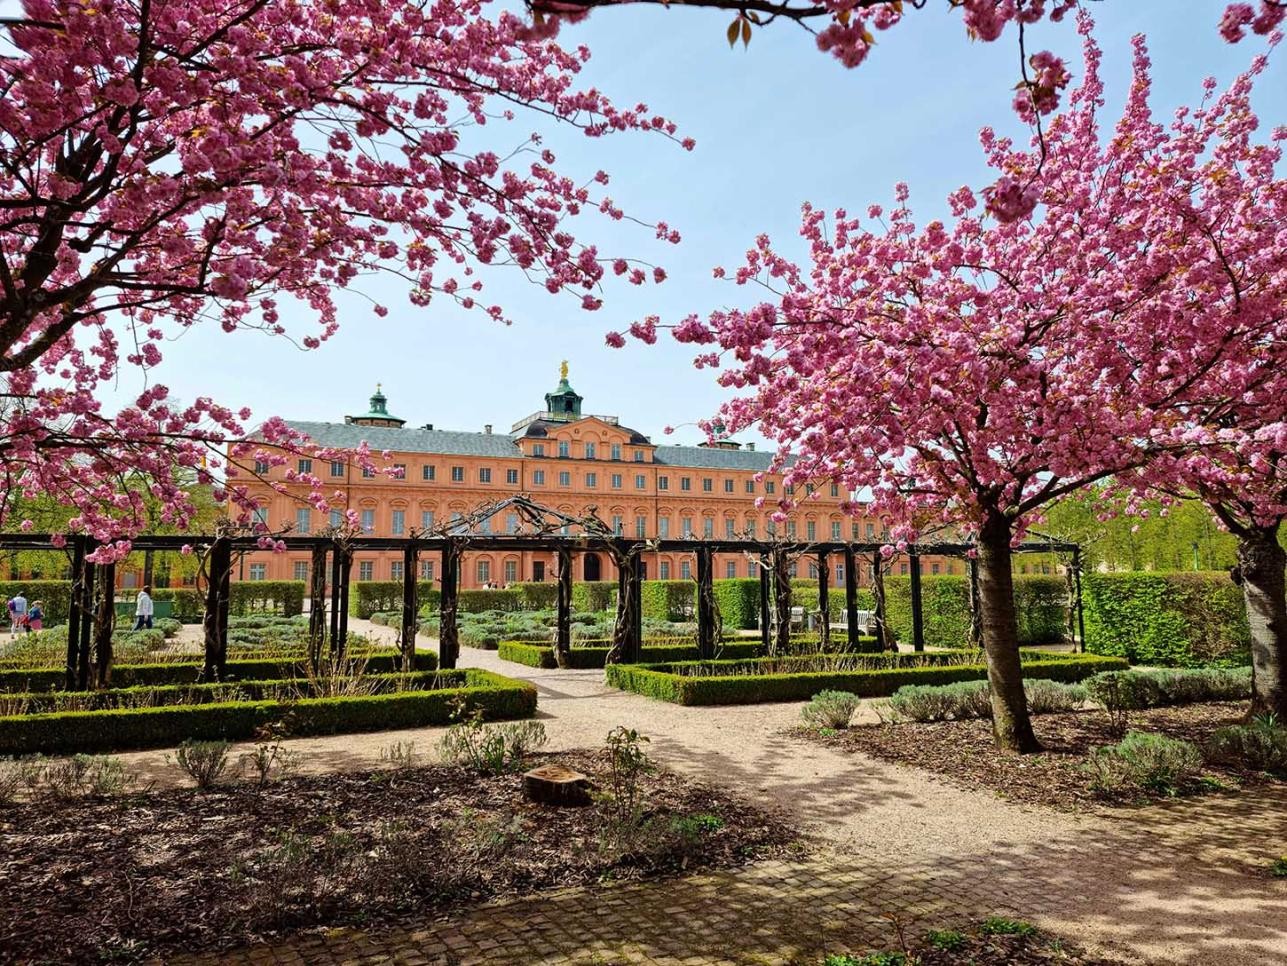 Cerisiers ornementaux à fleurs roses dans le jardin du château de Rastatt